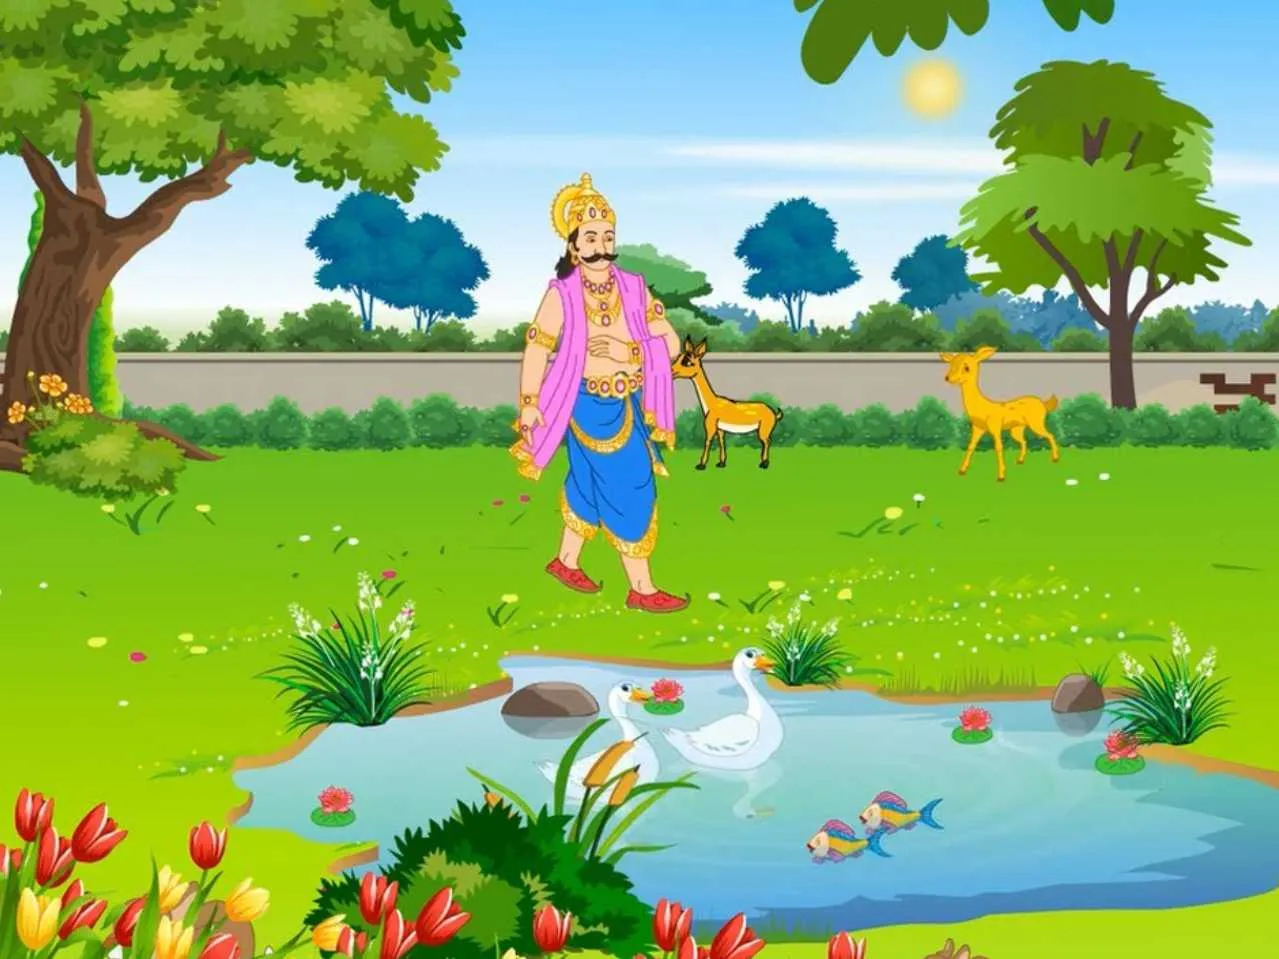 King in garden cartoon image